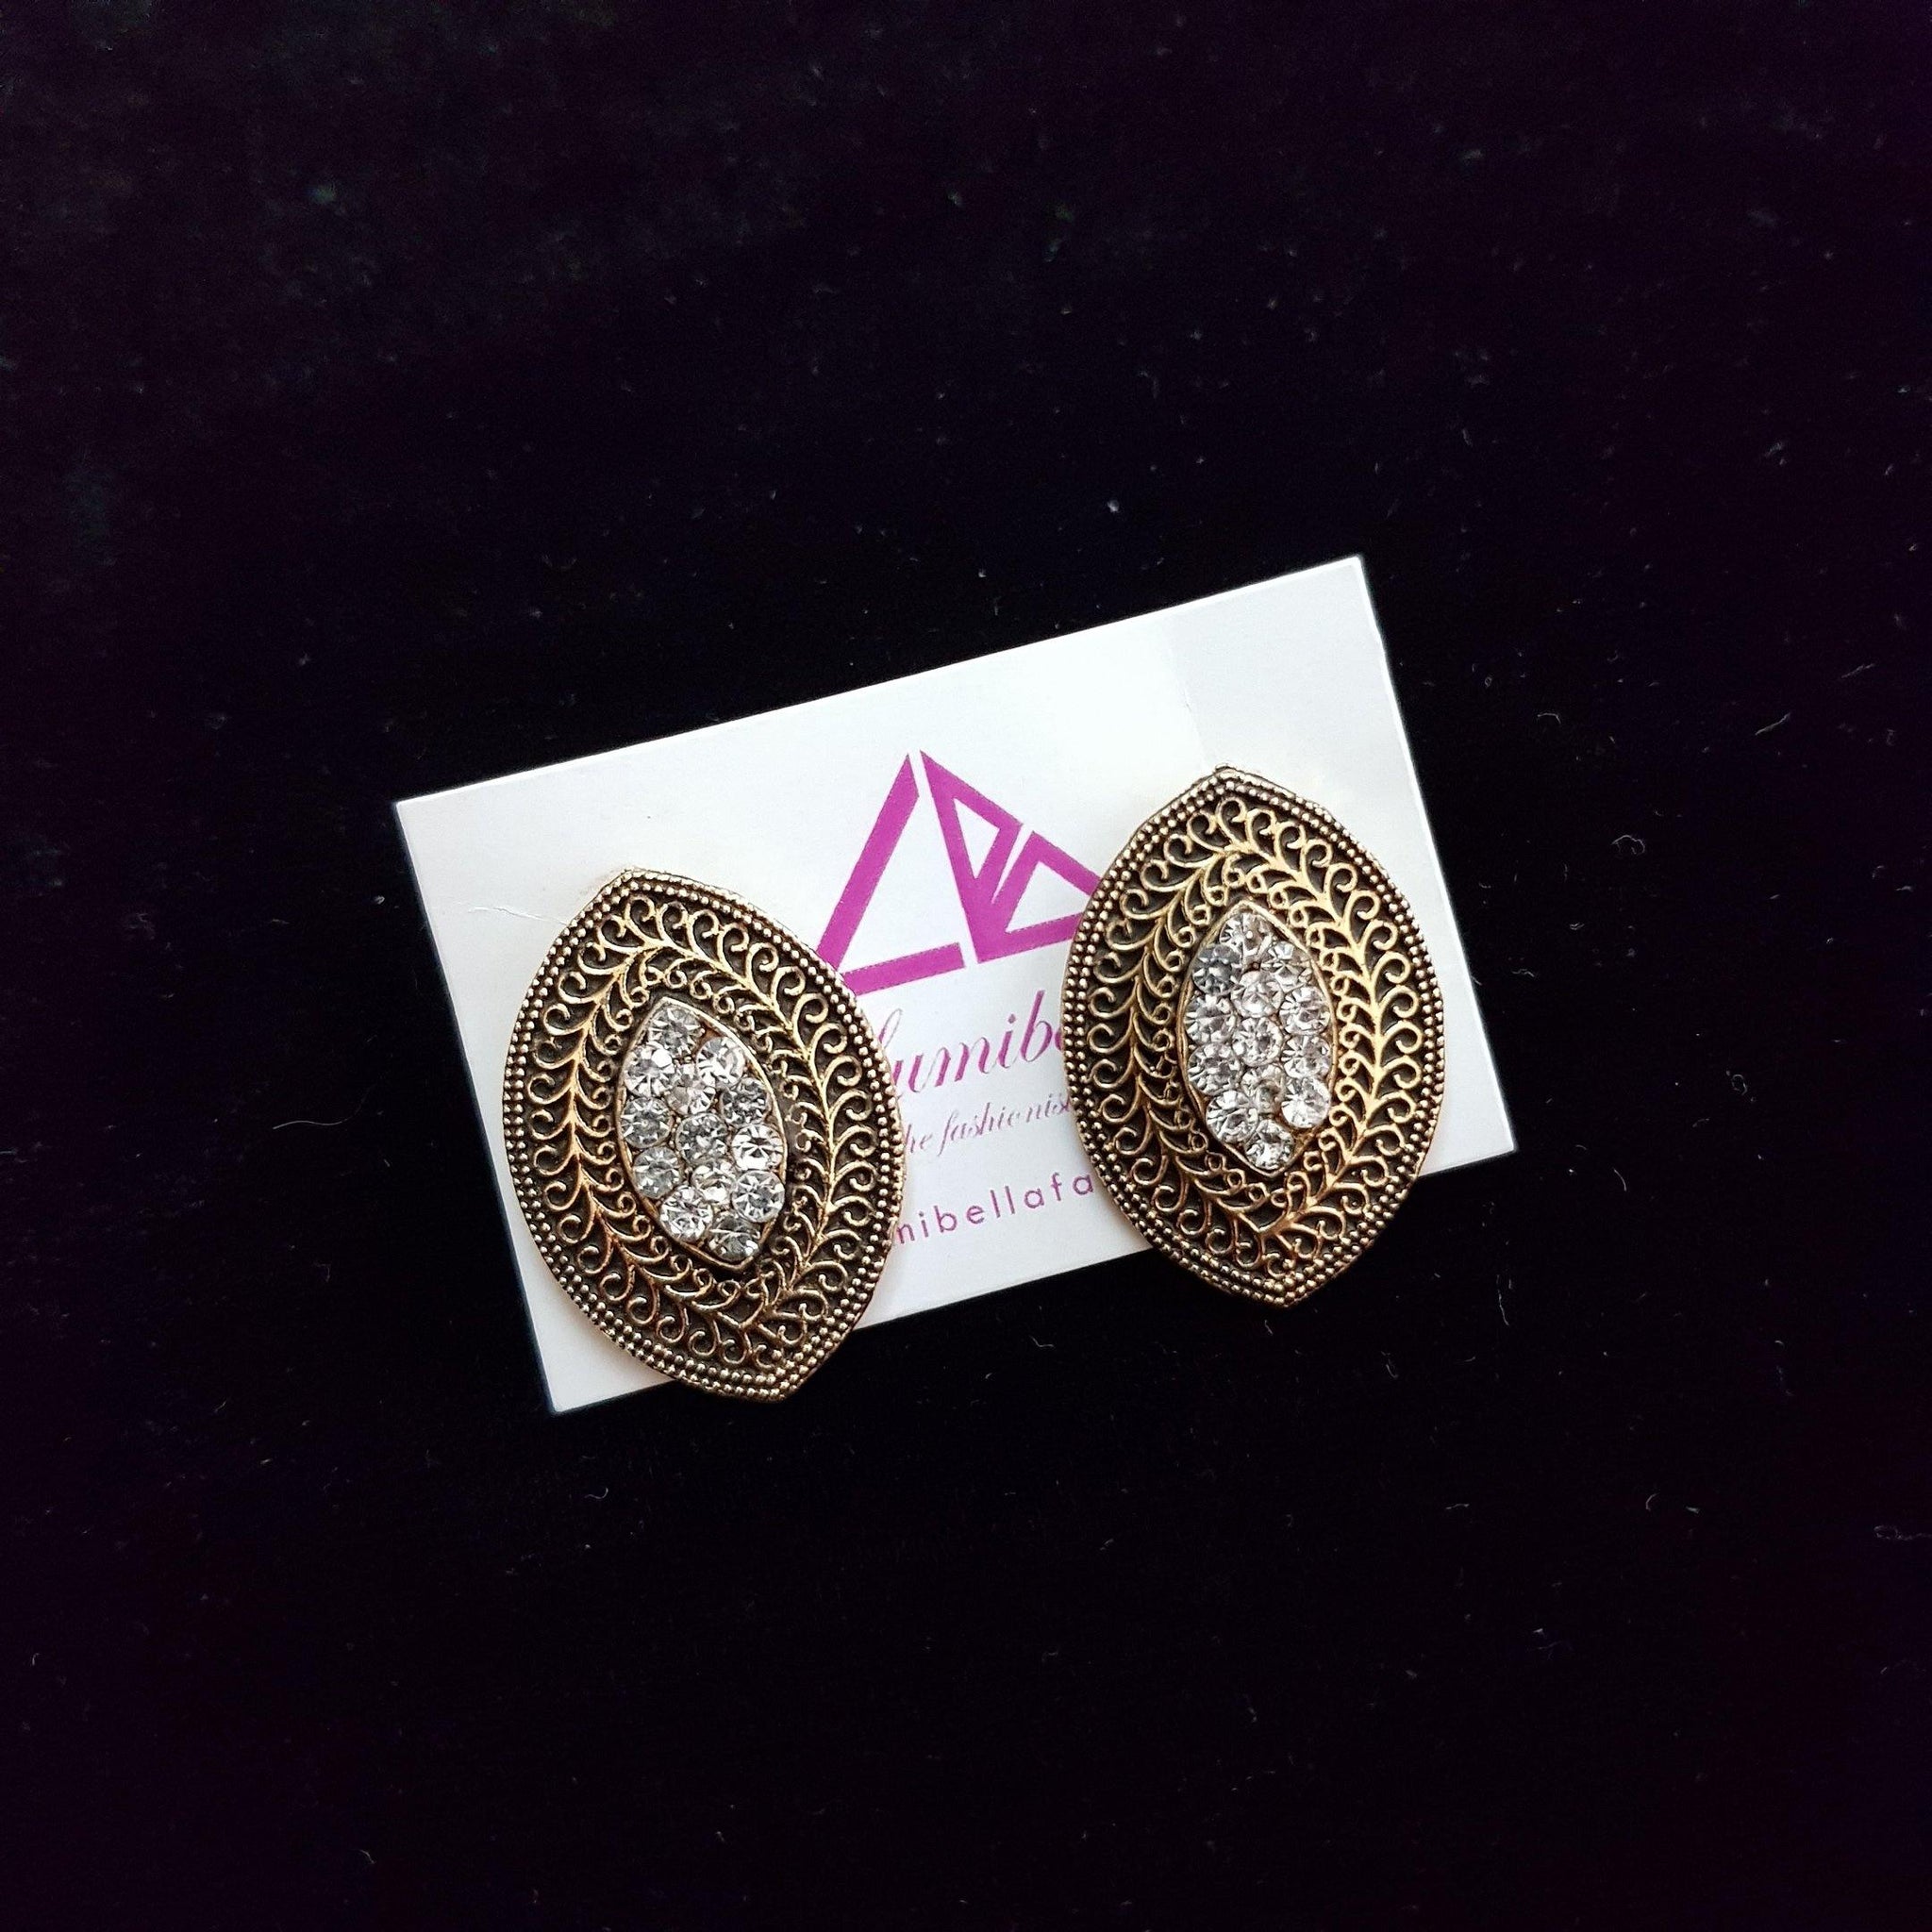 Daily wear Oval Style earrings - LumibellaFashion